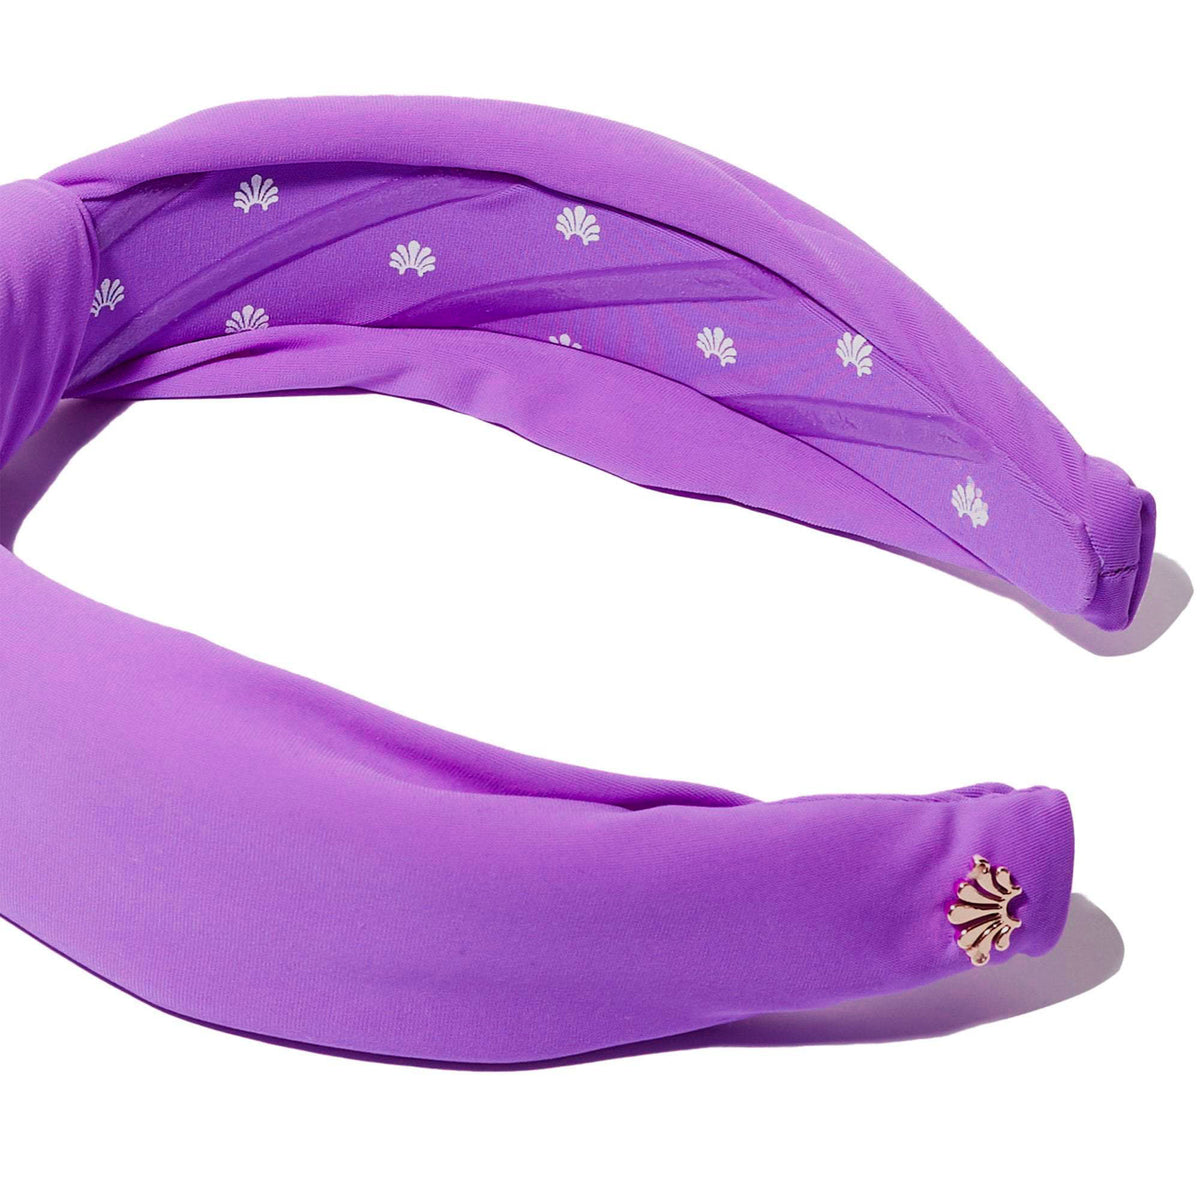 Printed Purple Neoprene Knotted Headband